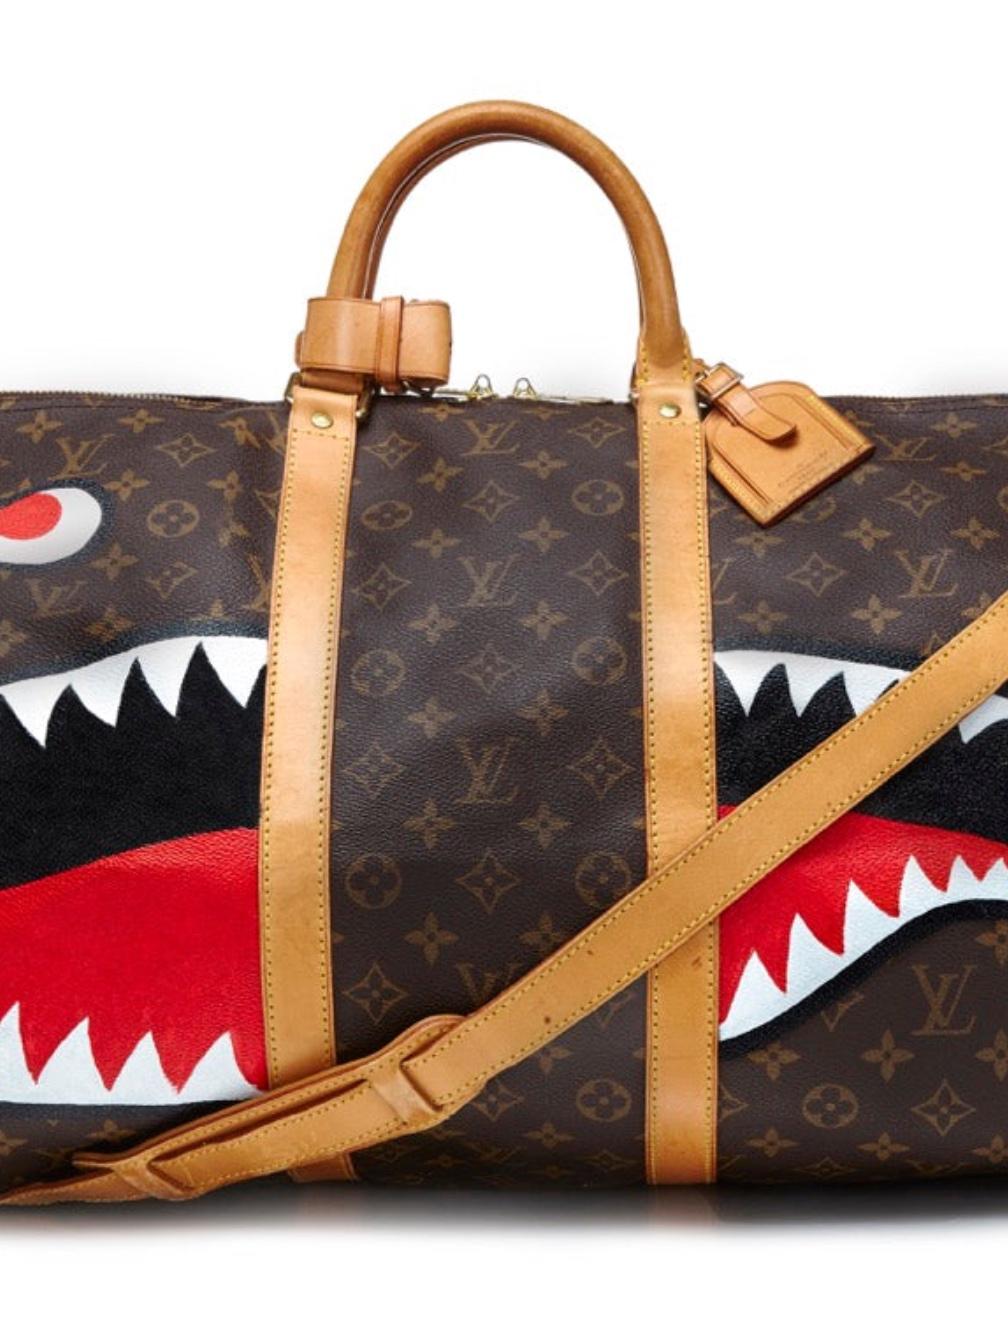 Ajoutez du mordant à votre look avec ce sac de voyage Shark Keepall de Louis Vuitton, peint à la main, issu de la collection Emotional Baggage de Rewind, où des sacs à main emblématiques sont spécialement personnalisés à l'aide d'illustrations